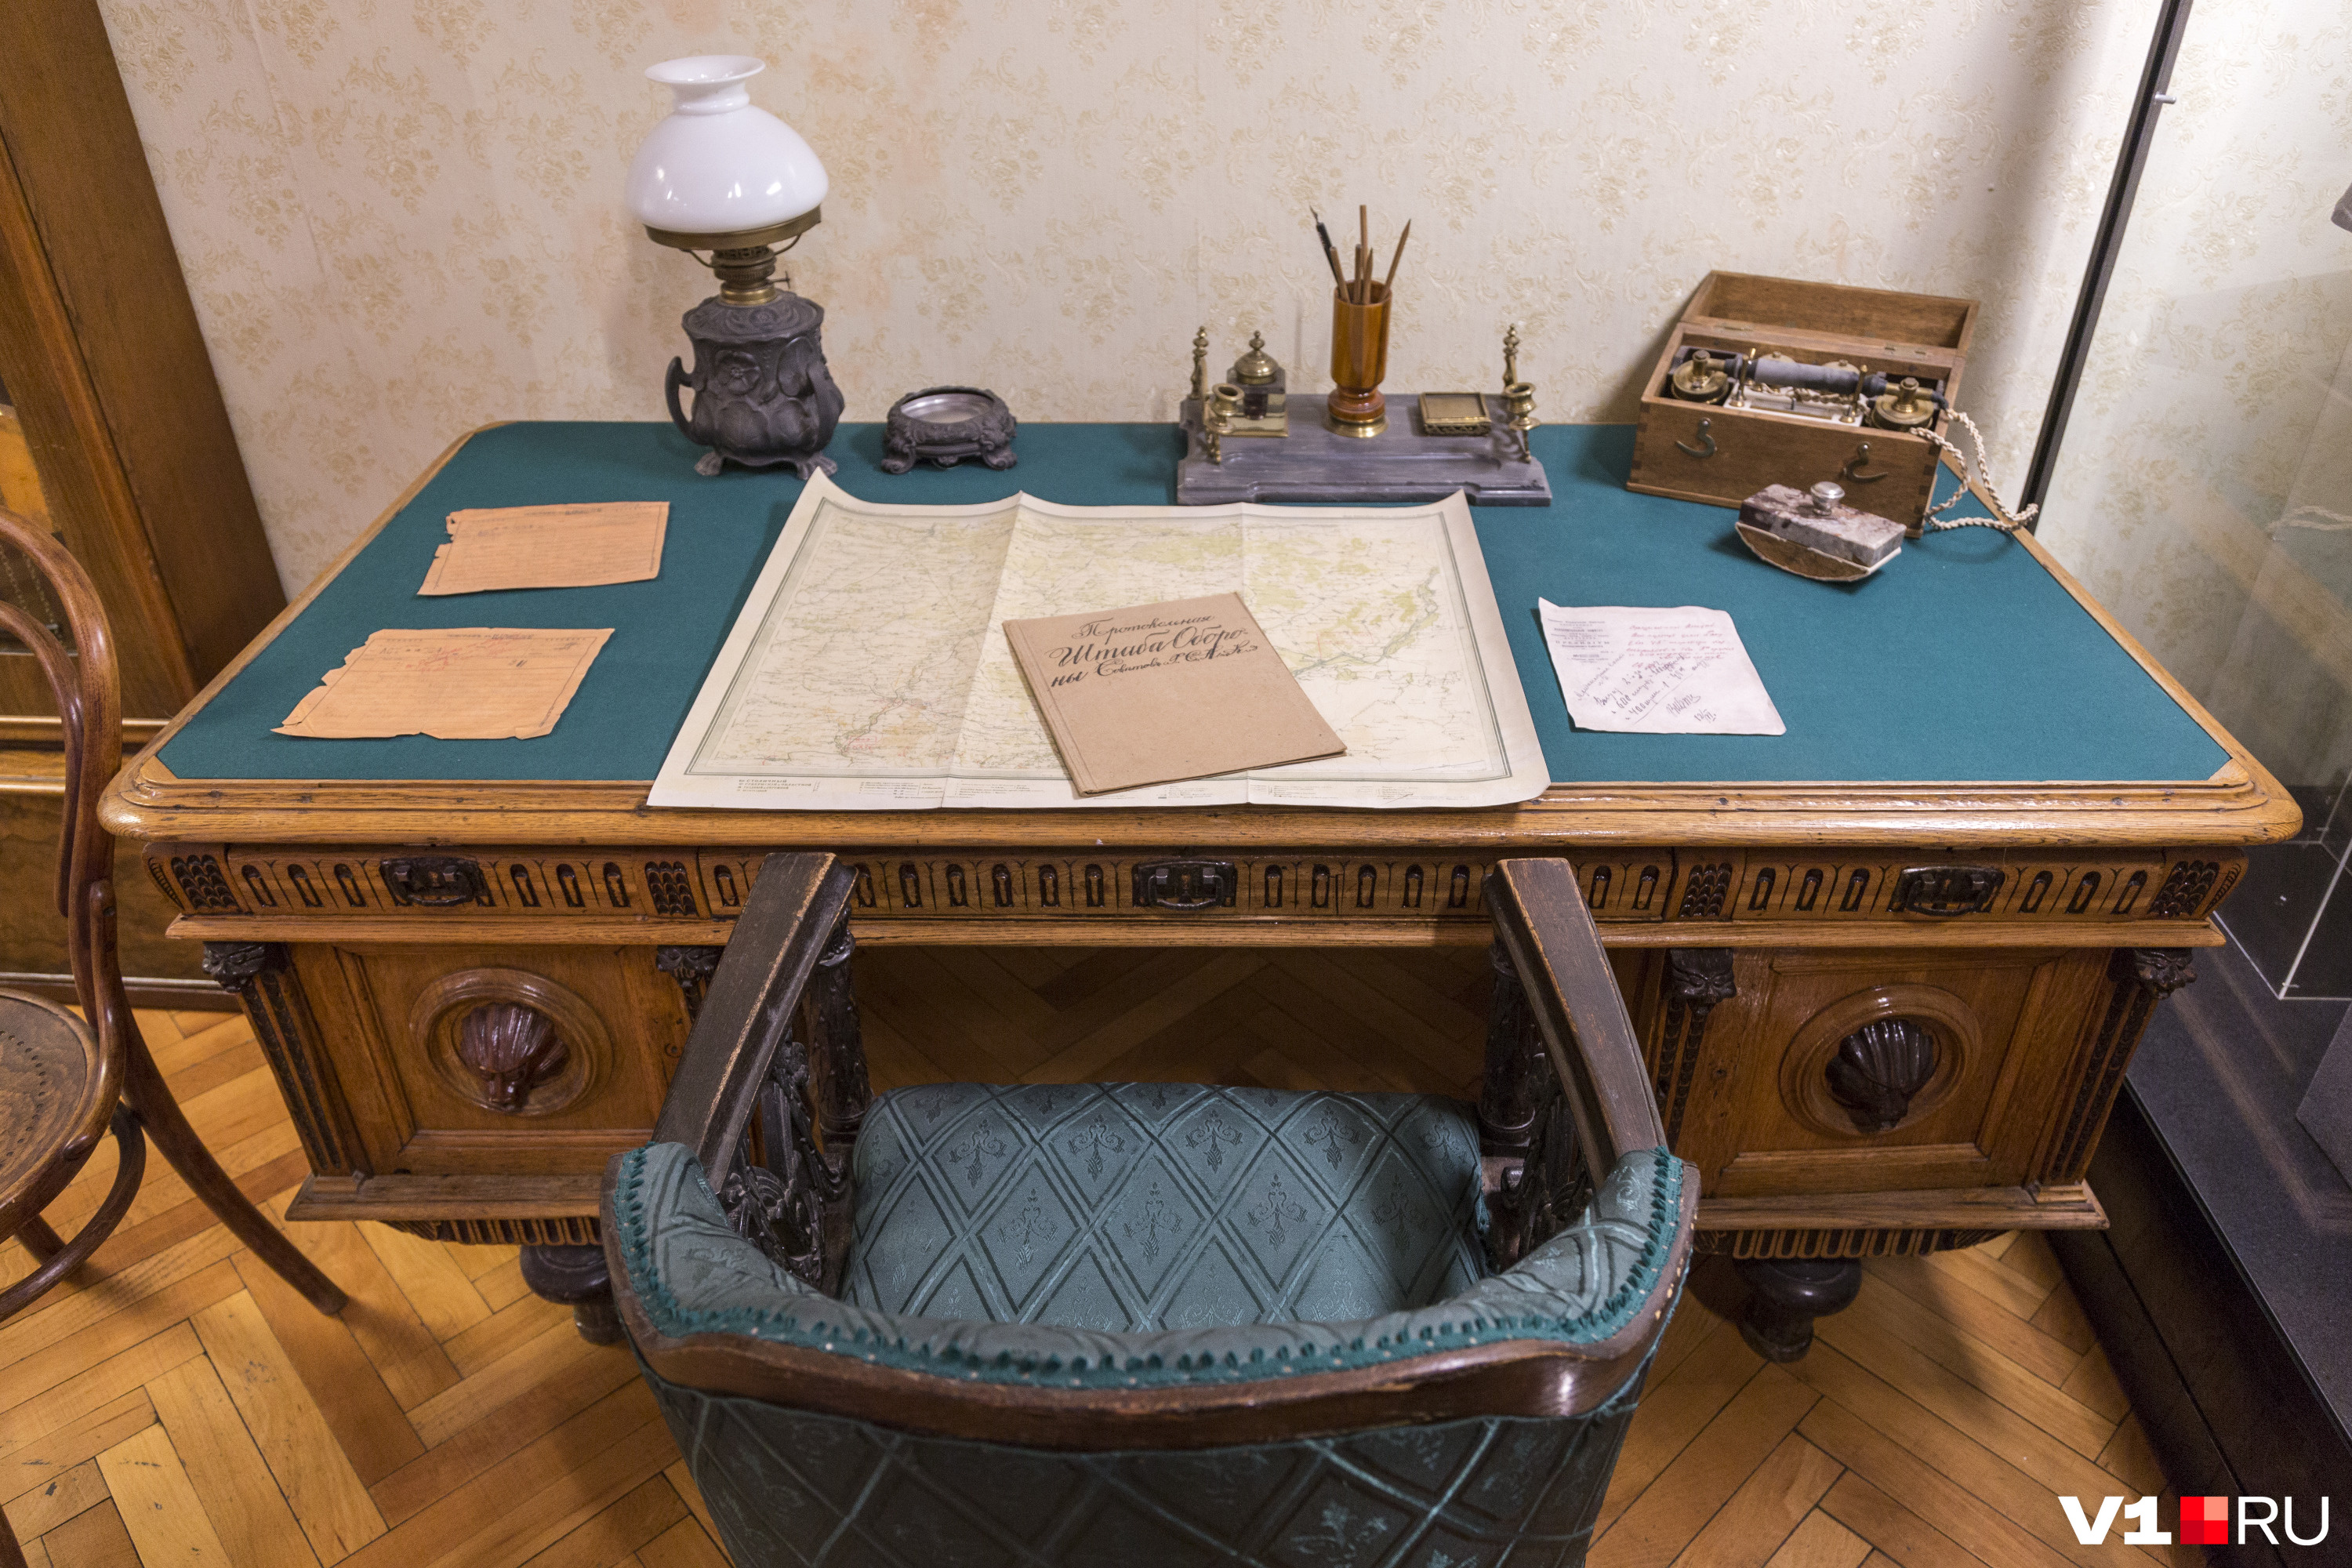 Возможно, заговорщики печатали свои планы именно за этим столом, что сейчас в экспозиции мемориально-исторического музея